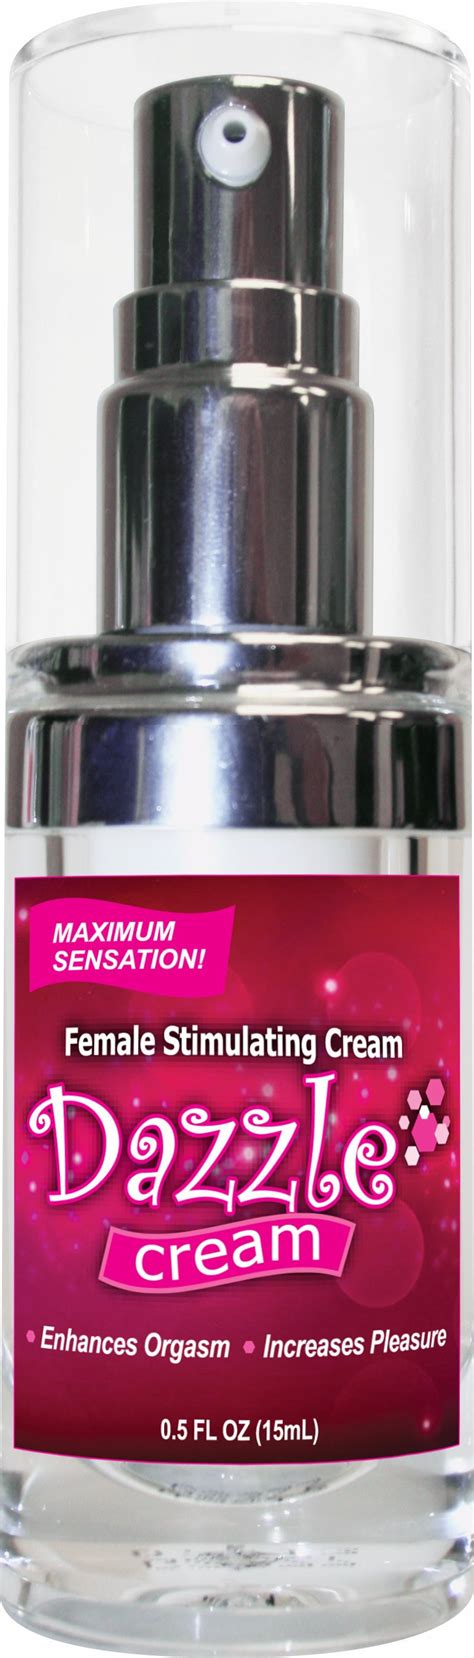 Dazzle Female Stimulating Cream 5 Oz Bottle Pleasure Sex Store